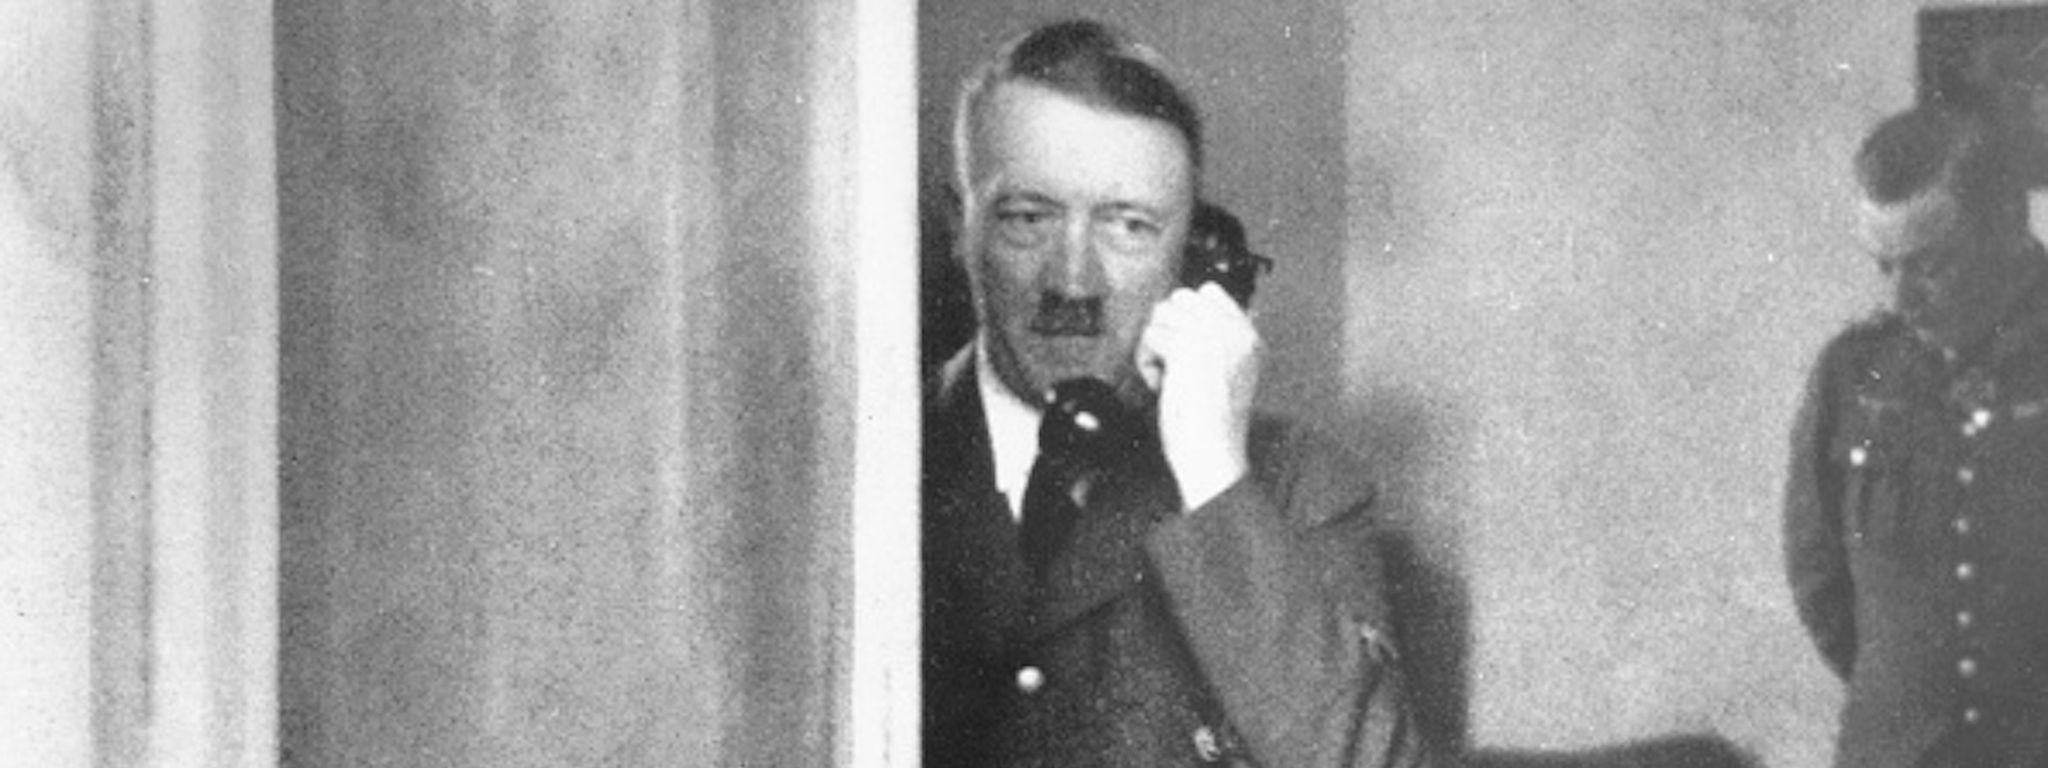 Điện thoại của Hitler được bán với giá 243.000 đô la